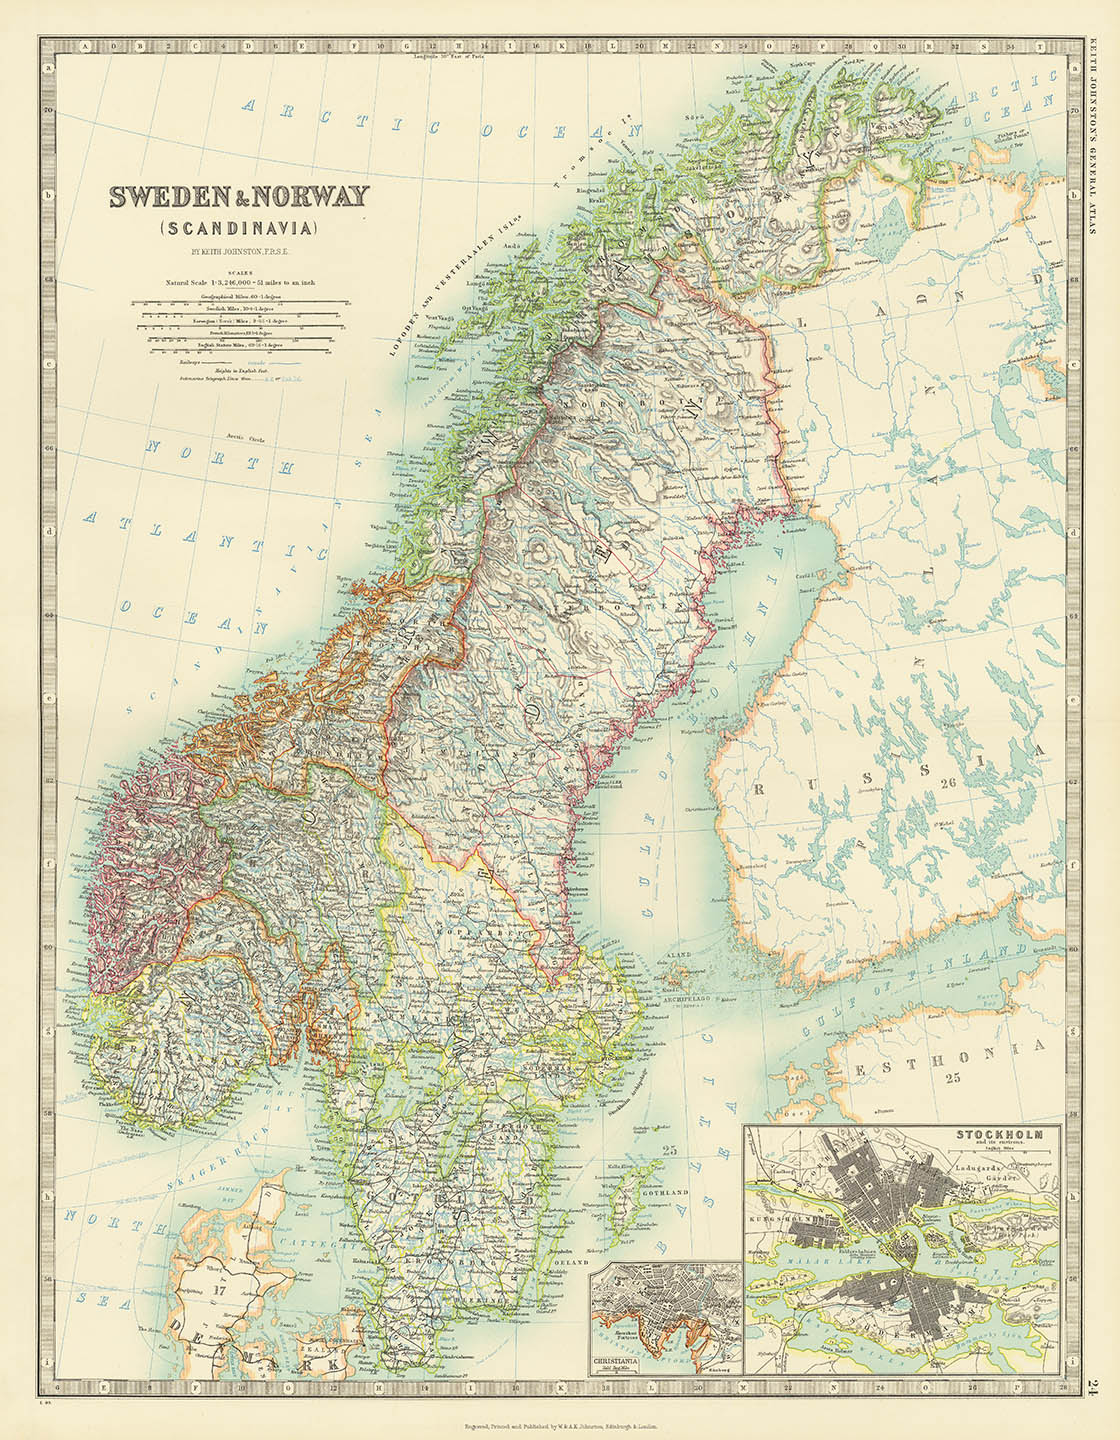 Sweden & Norway. (Scandinavia).